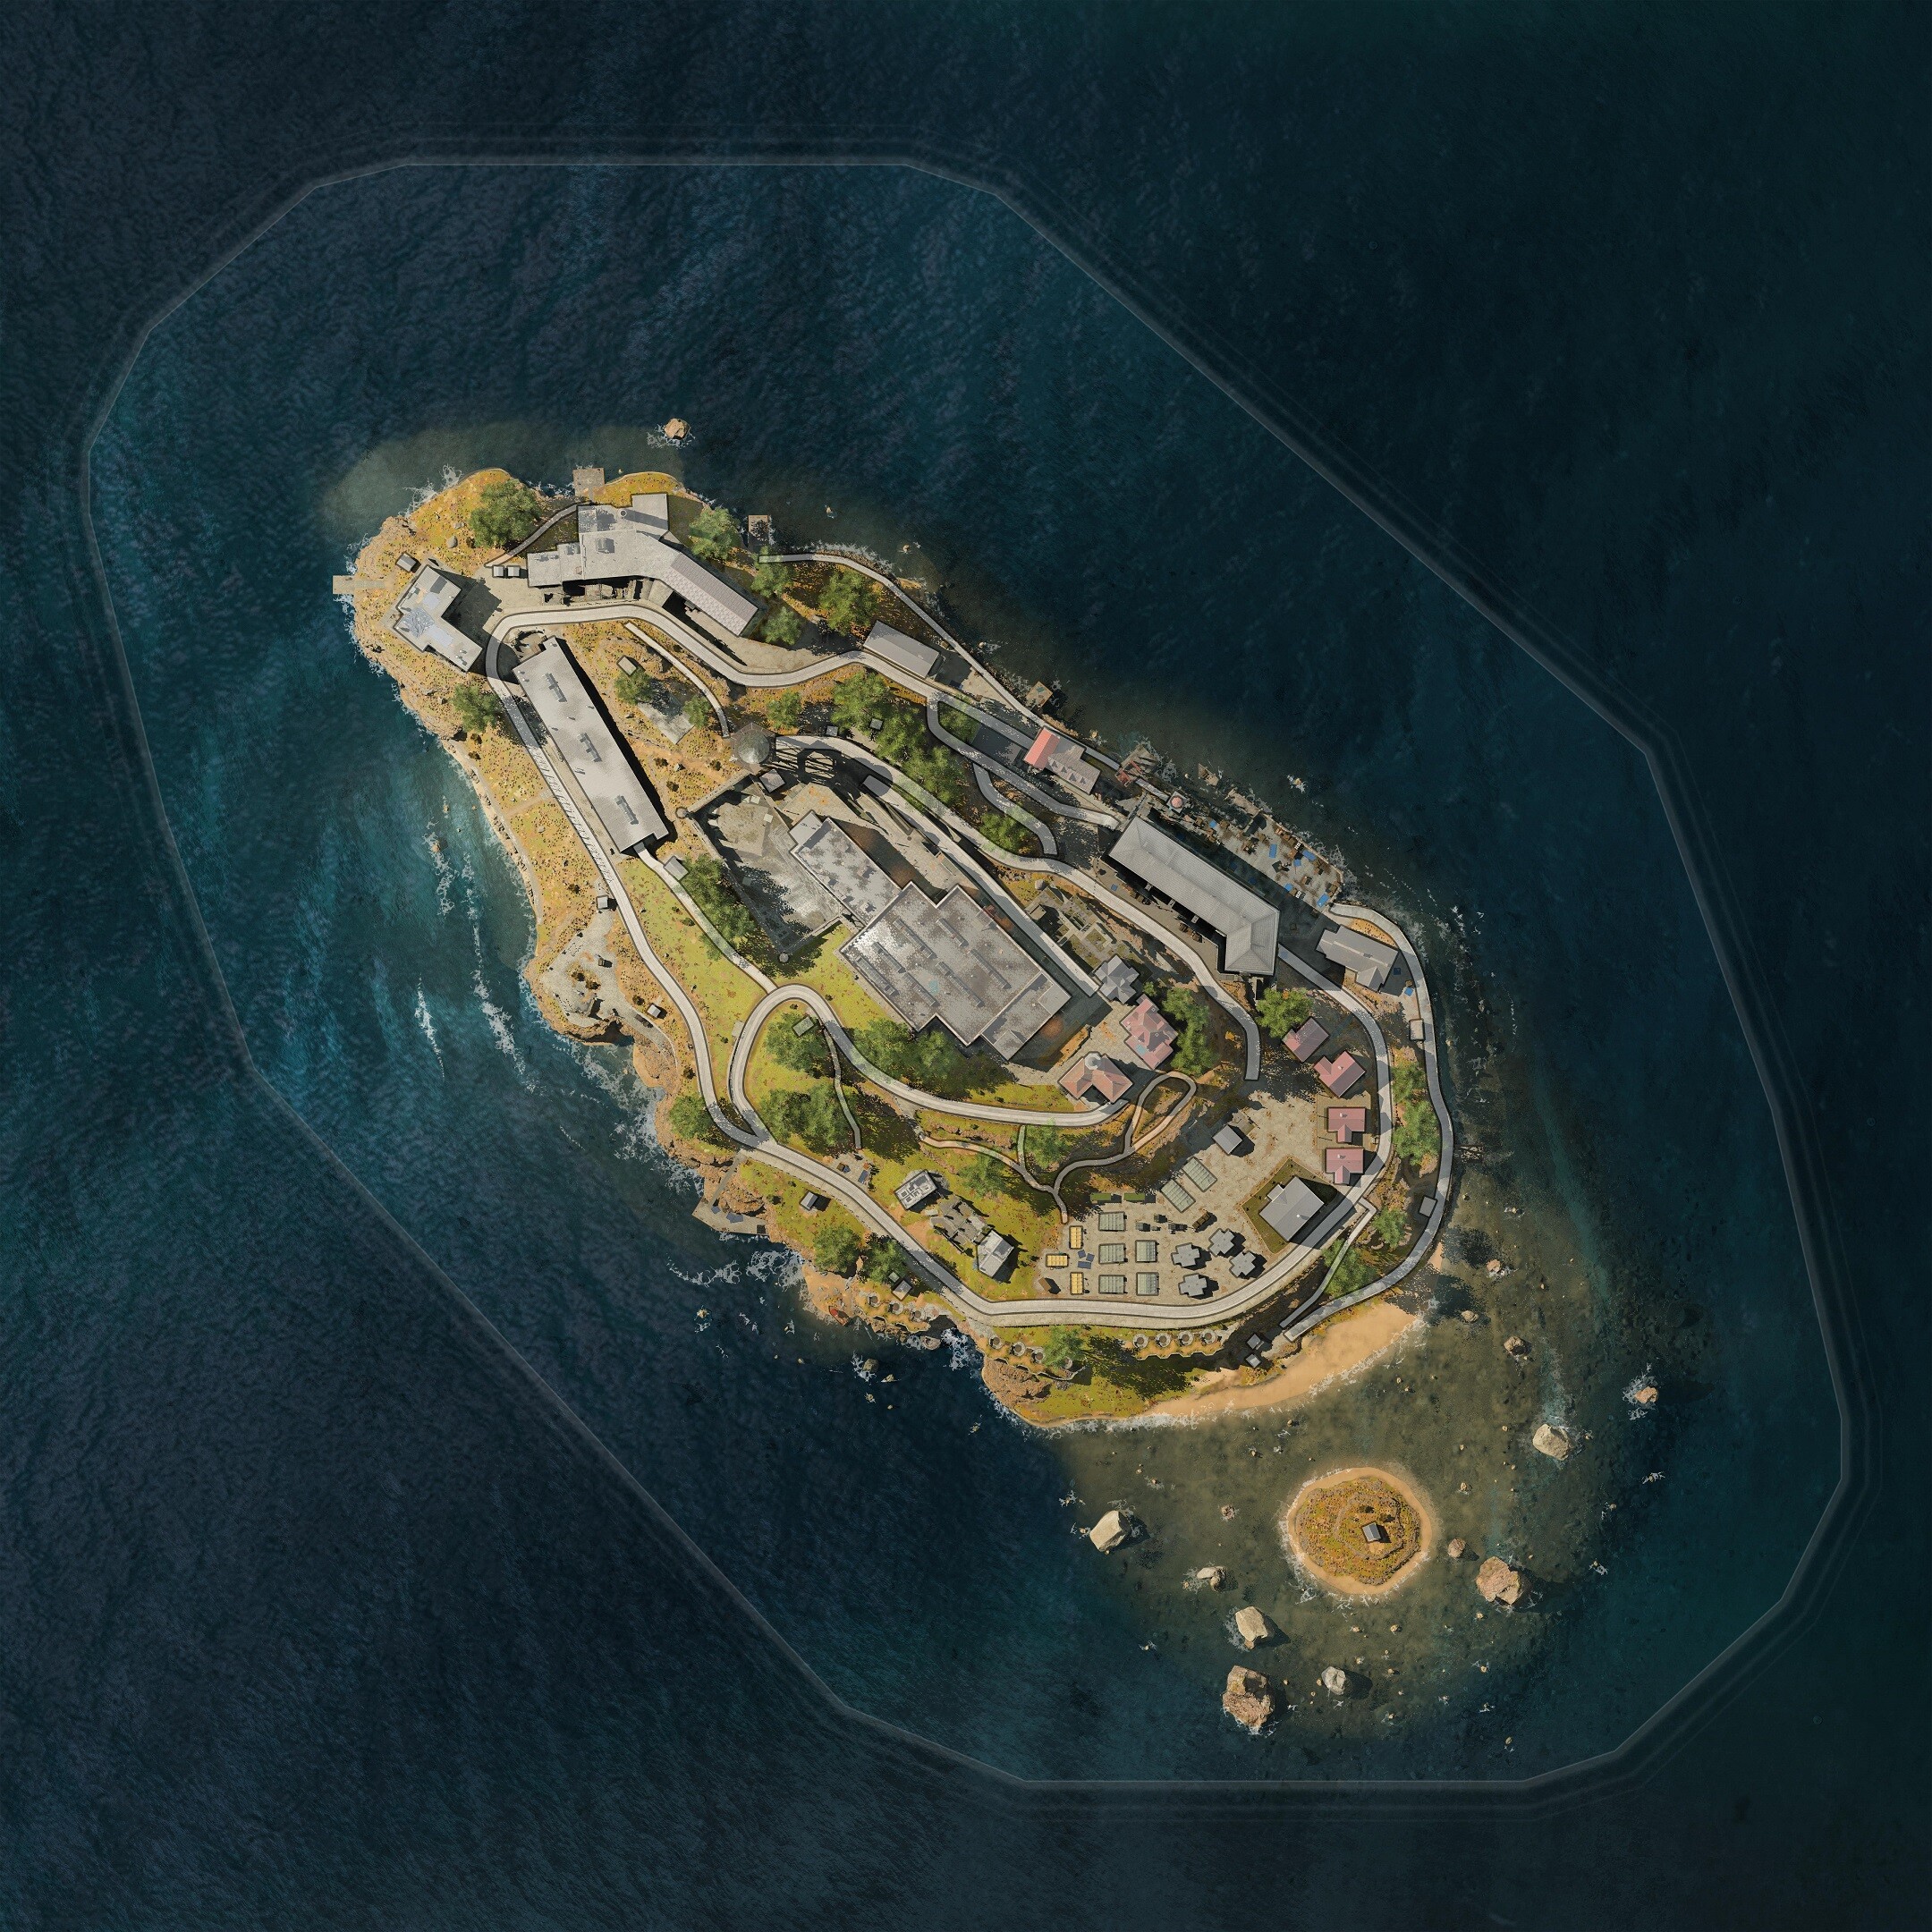 Leet | Szivárgások szerint az Alcatraz része lesz a Warzone-nak